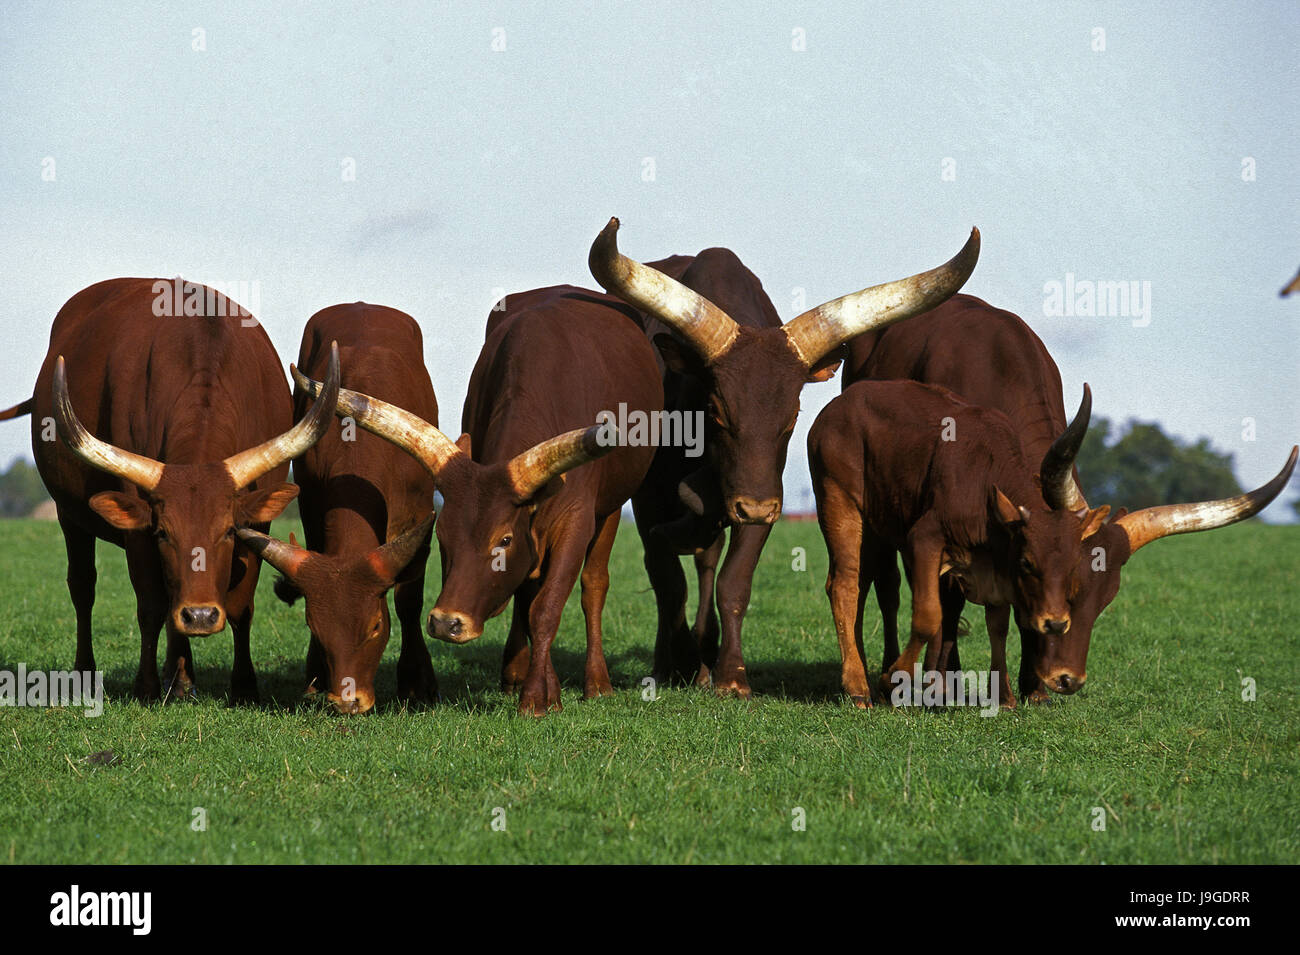 Watussi, bos primigenius taurus, Herd, Stock Photo